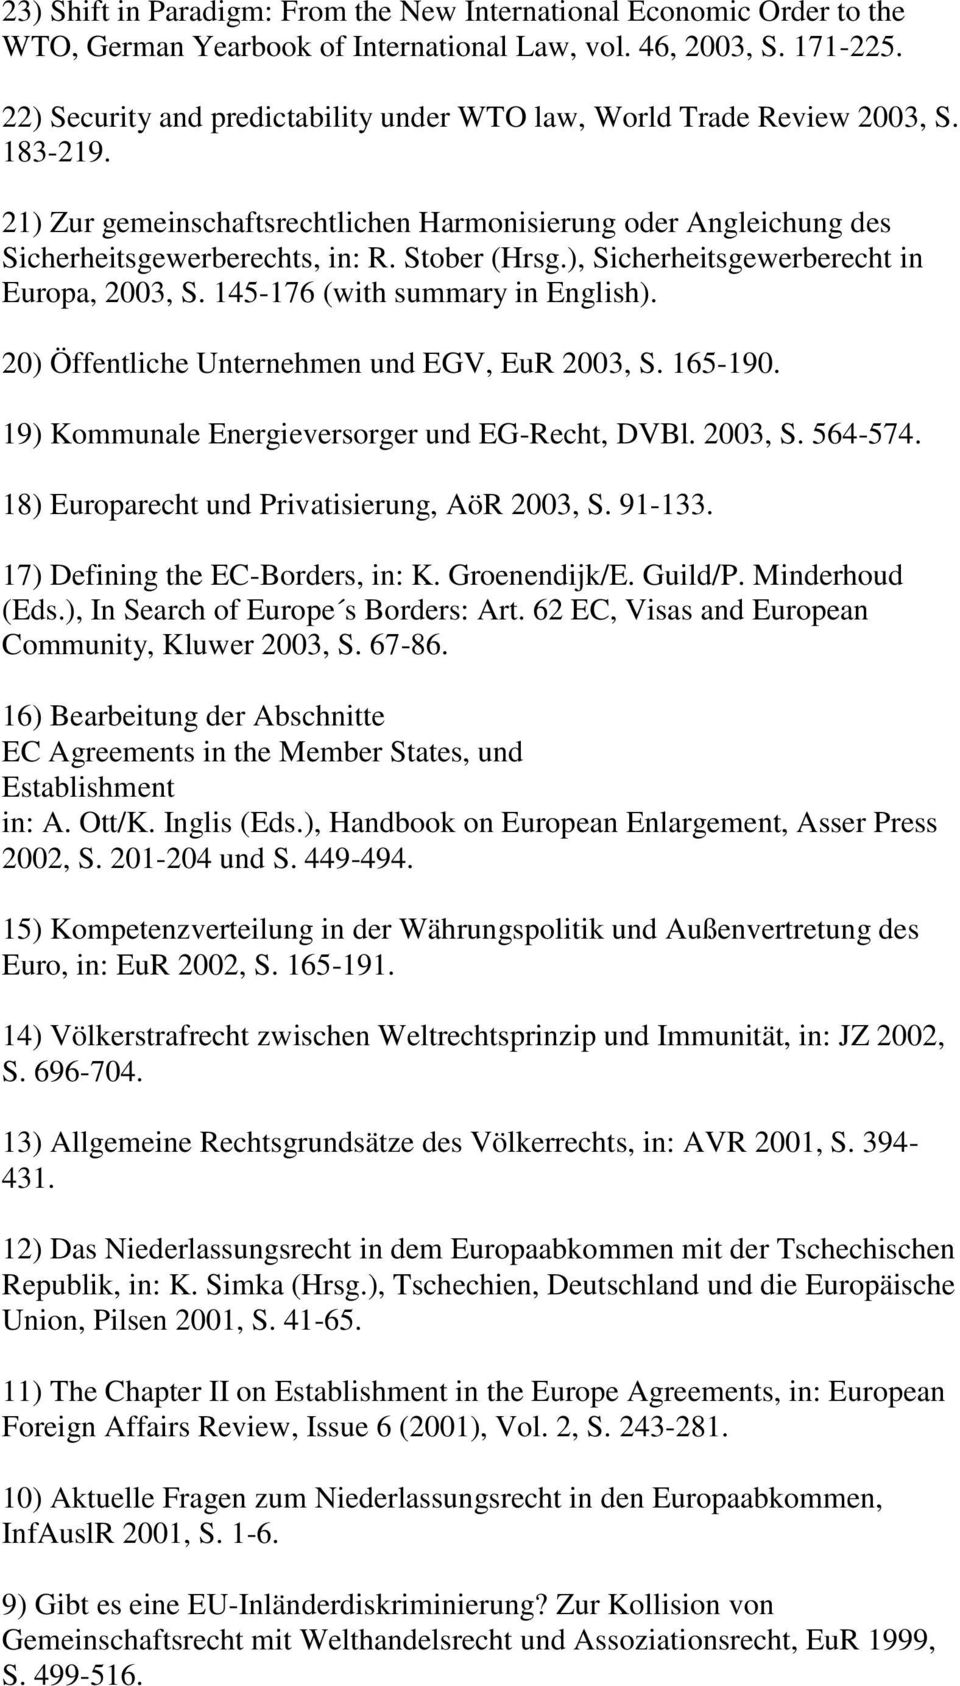 ), Sicherheitsgewerberecht in Europa, 2003, S. 145-176 (with summary in English). 20) Öffentliche Unternehmen und EGV, EuR 2003, S. 165-190. 19) Kommunale Energieversorger und EG-Recht, DVBl. 2003, S. 564-574.